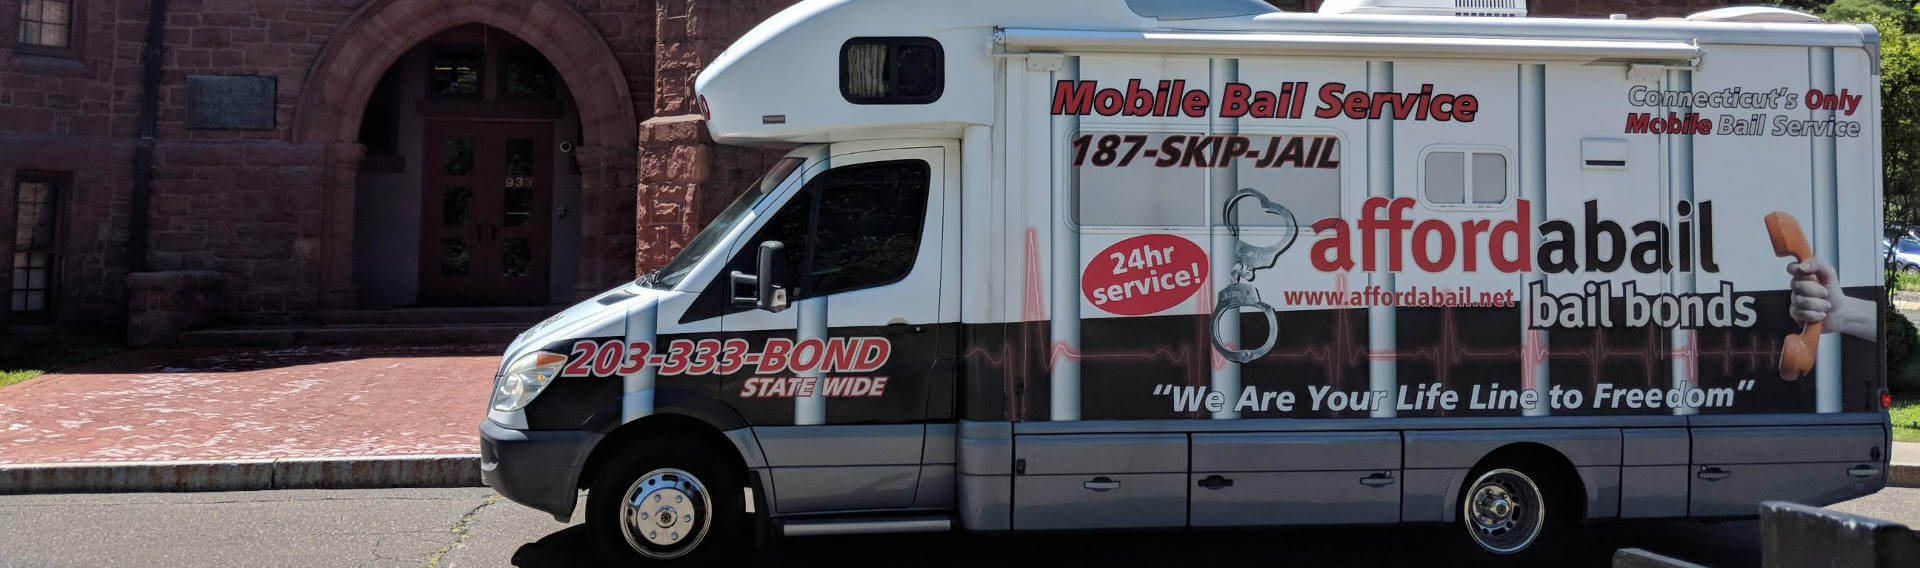 Mobile bail bonds service in Stratford CT